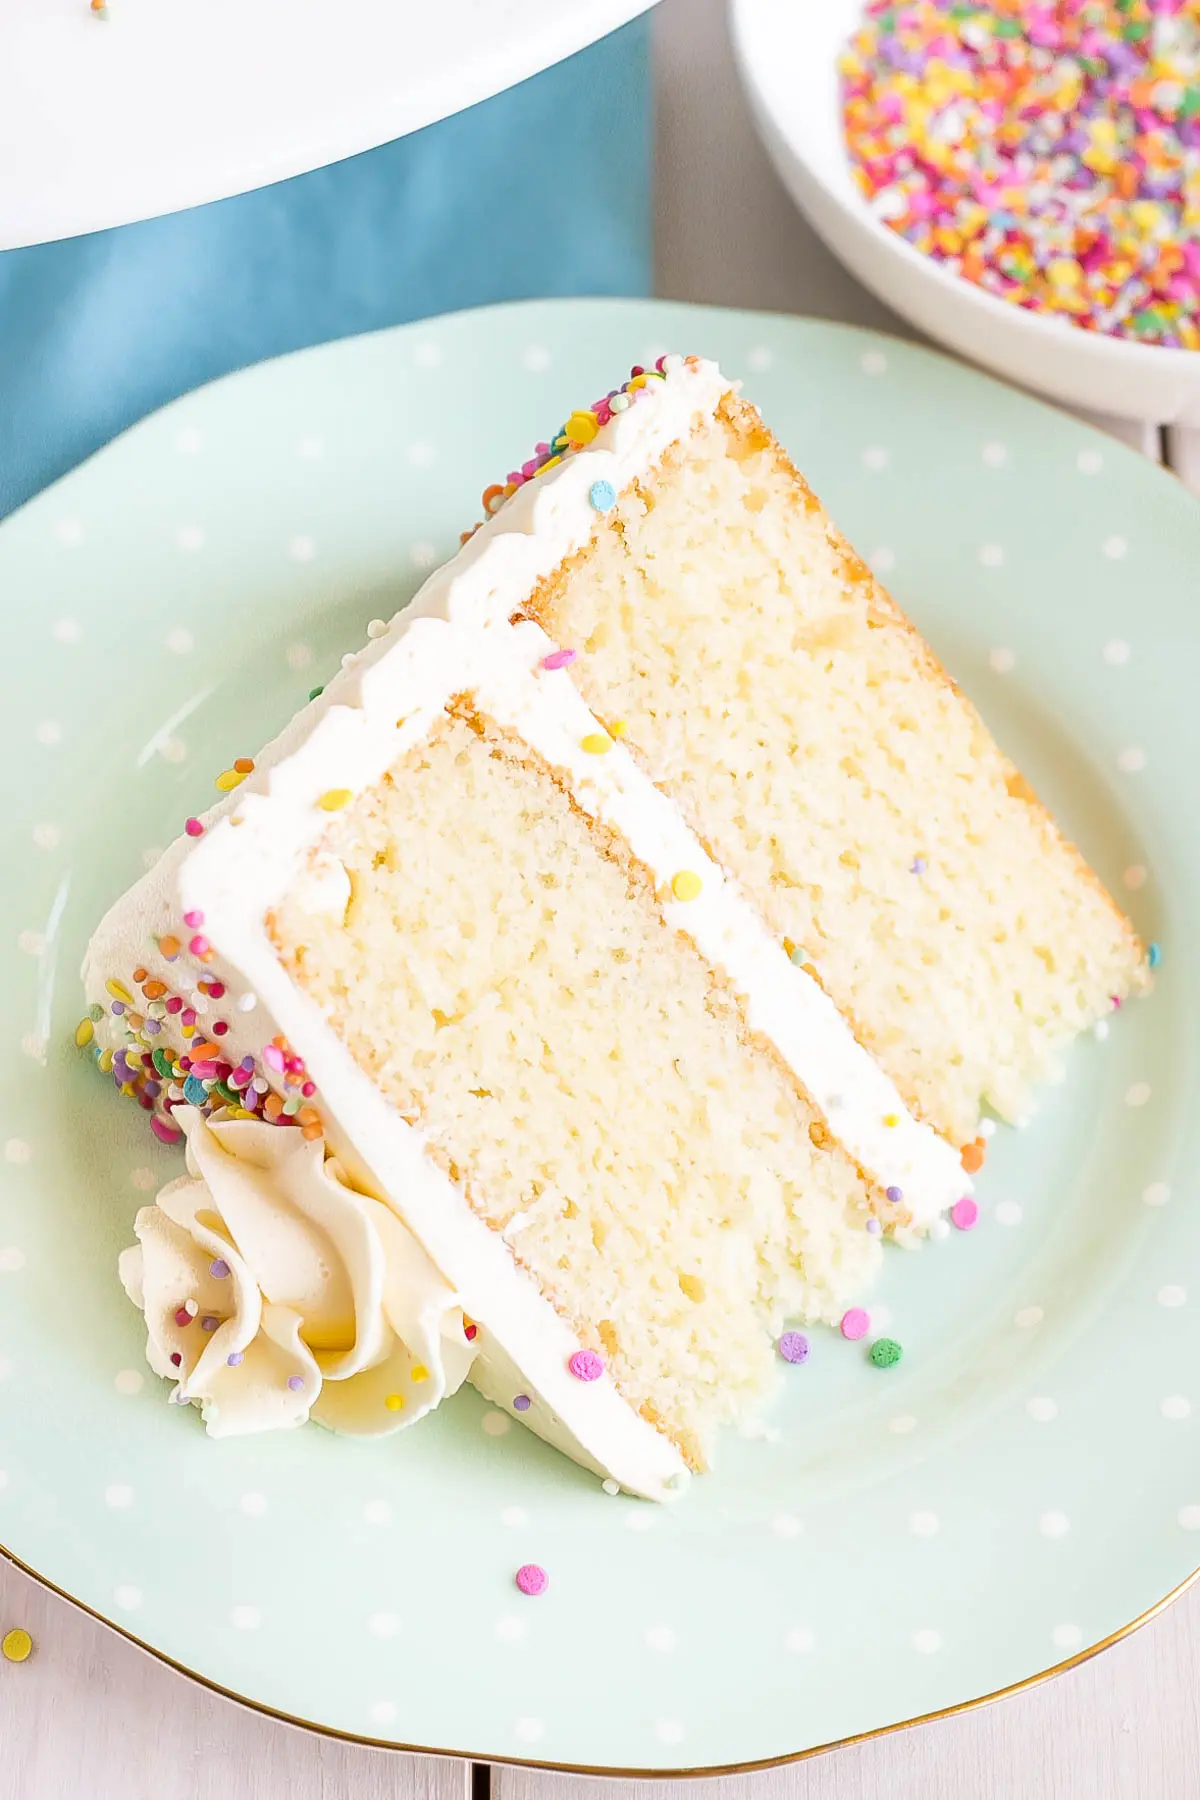 Pin by Patti Monhollen on Bundt cakes | Lemon pound cake recipe, Lemon  recipes, Pound cake recipes